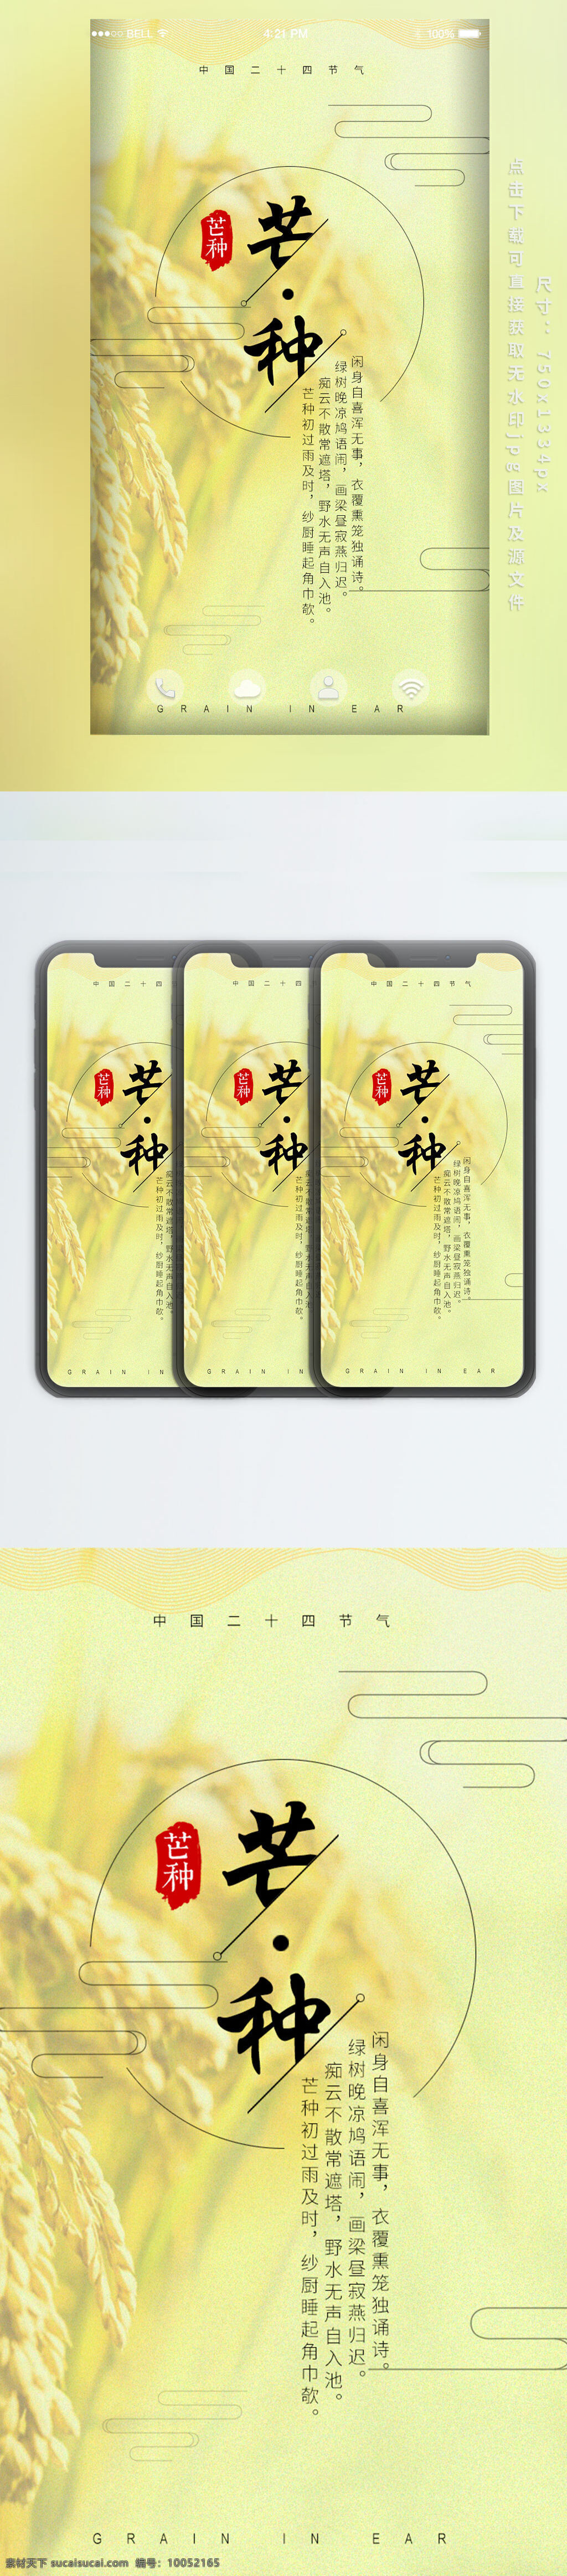 芒种 手机 配 图 节气 海报 二十四节气 黄色 麦穗 手机海报 芒种节气 传统节气 手机配图